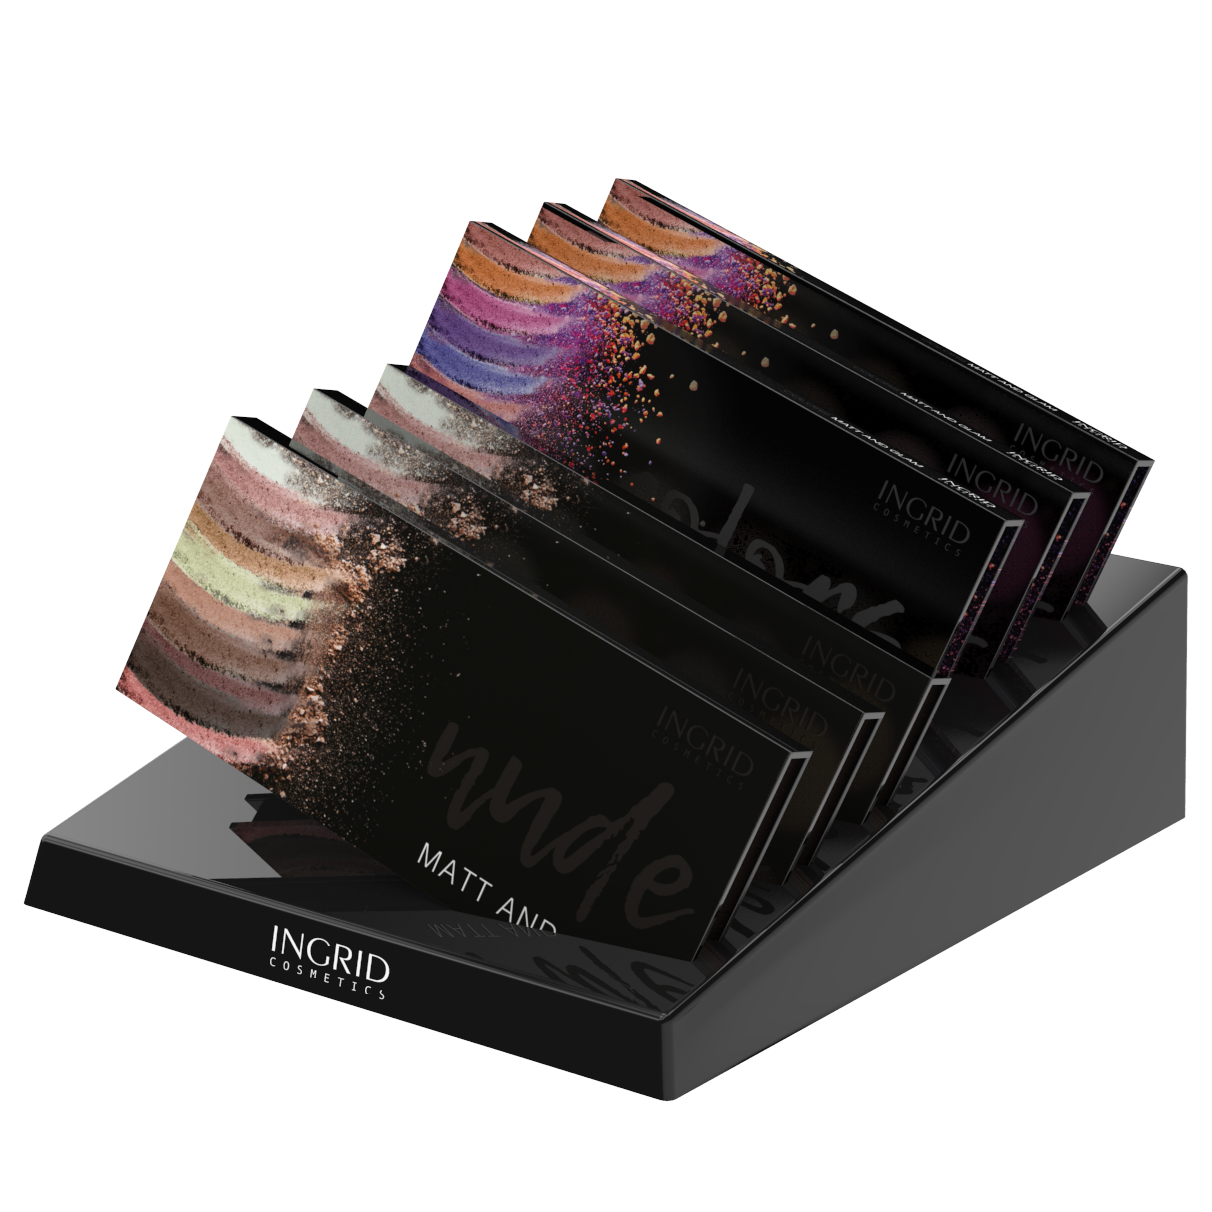 BtoB - Palette de 10 ombres à paupières  Colors + Nude - 27g - Ingrid - 10 pcs + 2 testers